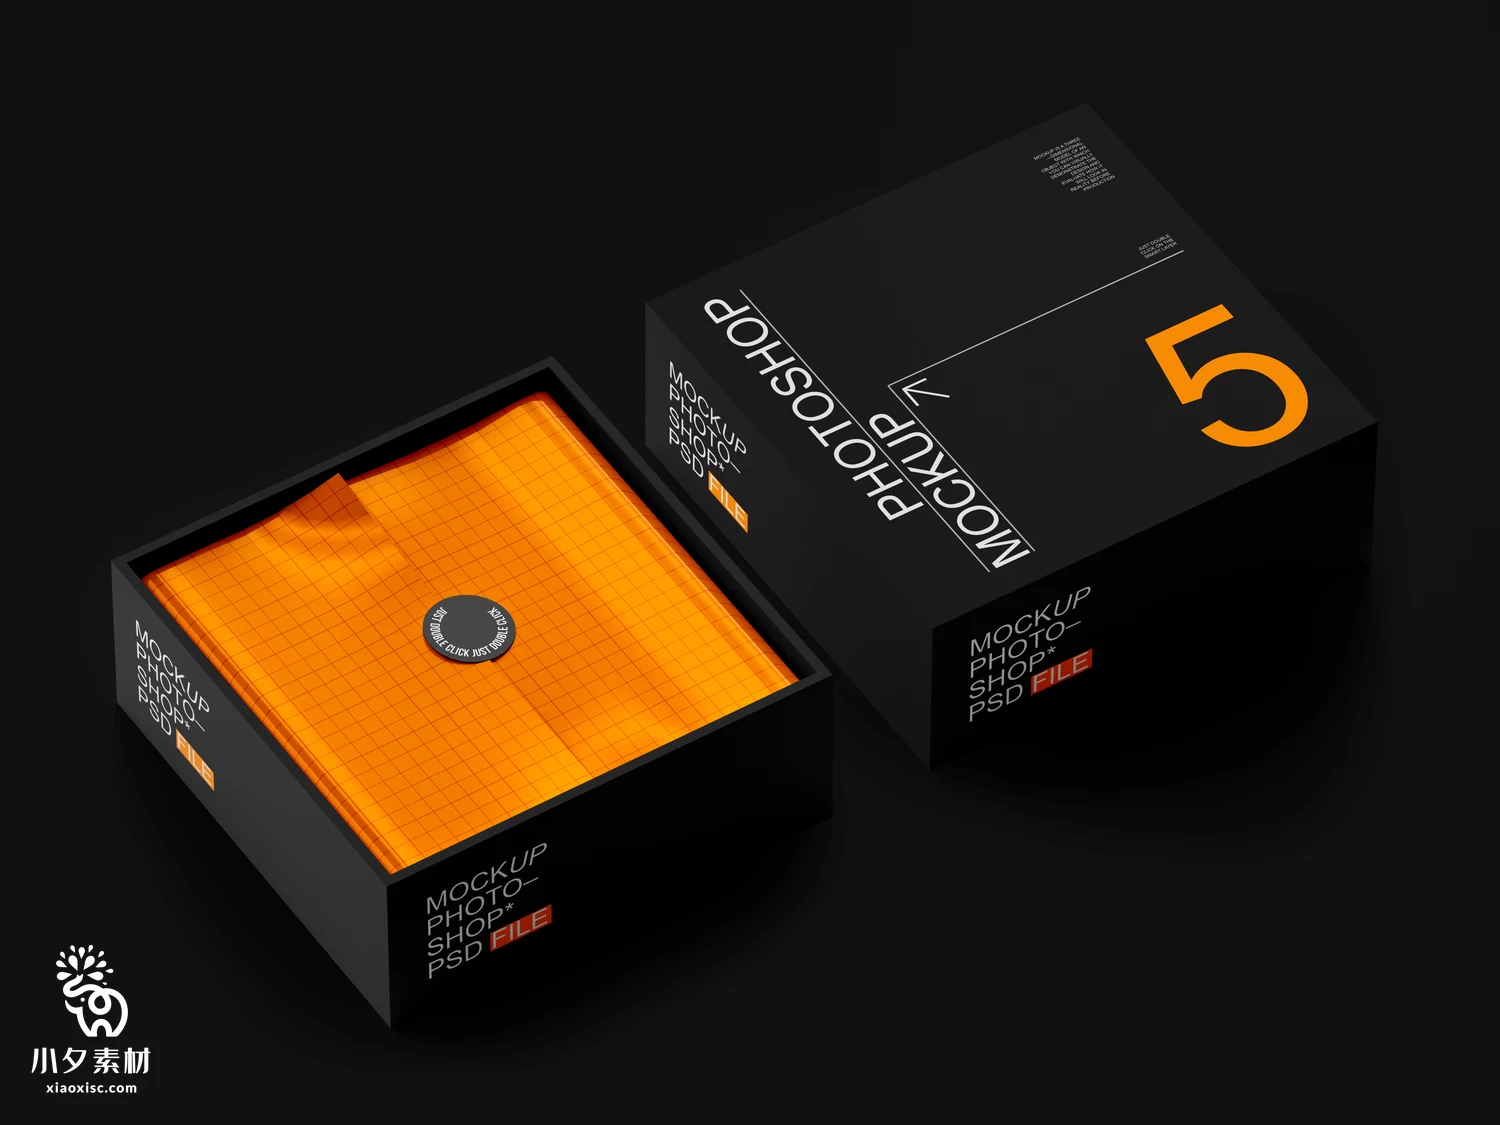 正方形天地盖礼品盒纸盒子VI展示包装智能贴图样机PSD设计素材【004】